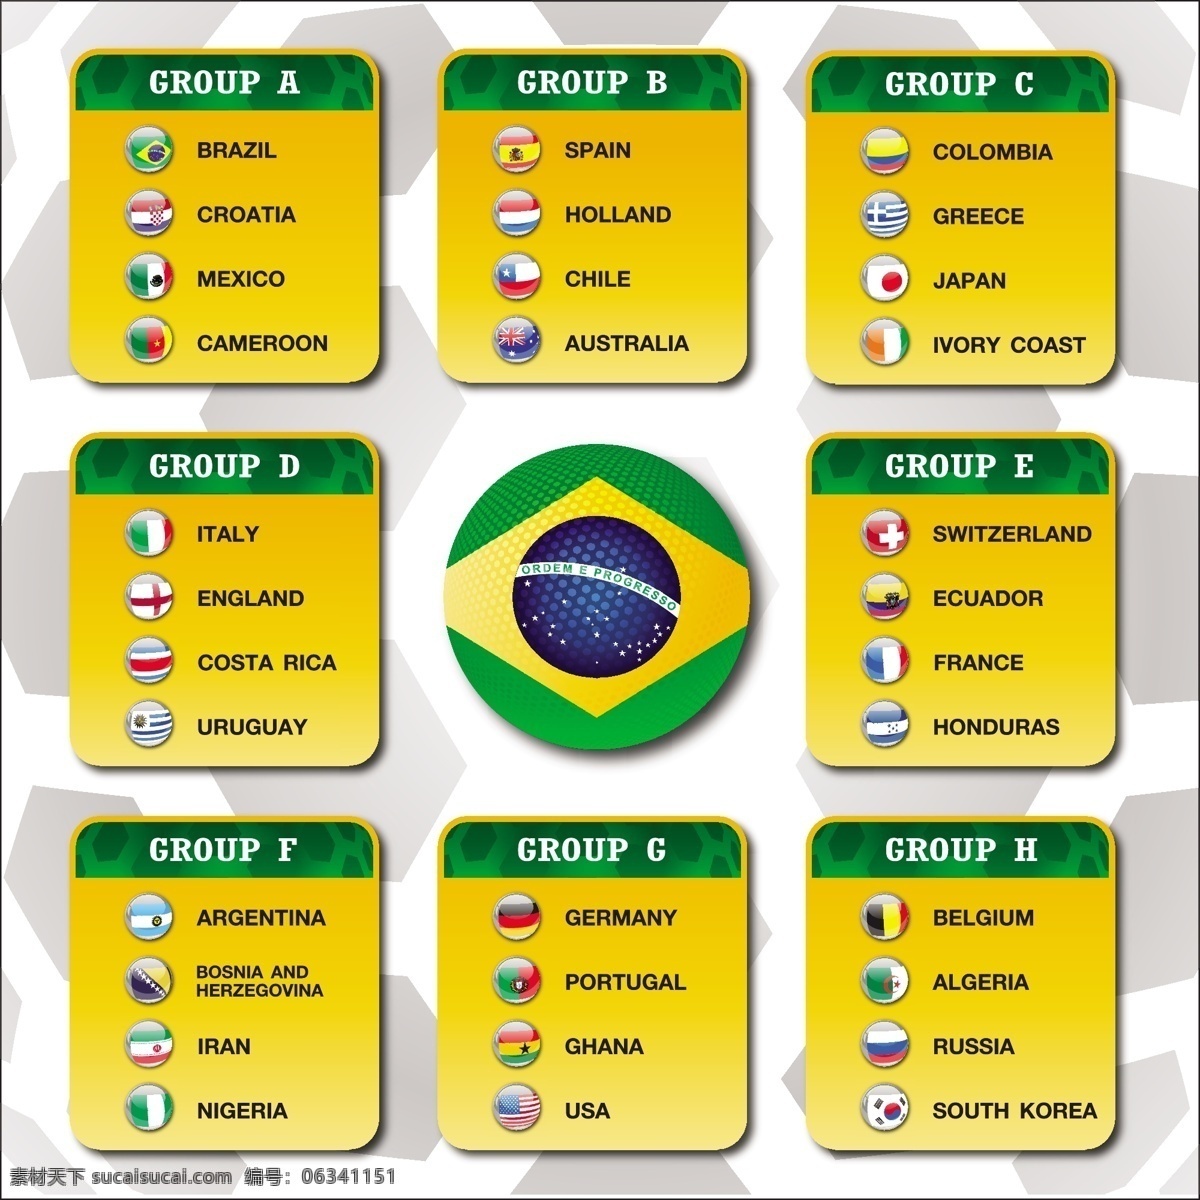 巴西 足球 世界杯 分组 模板下载 巴西国旗 足球赛事 足球比赛 体育运动 生活百科 矢量素材 黄色